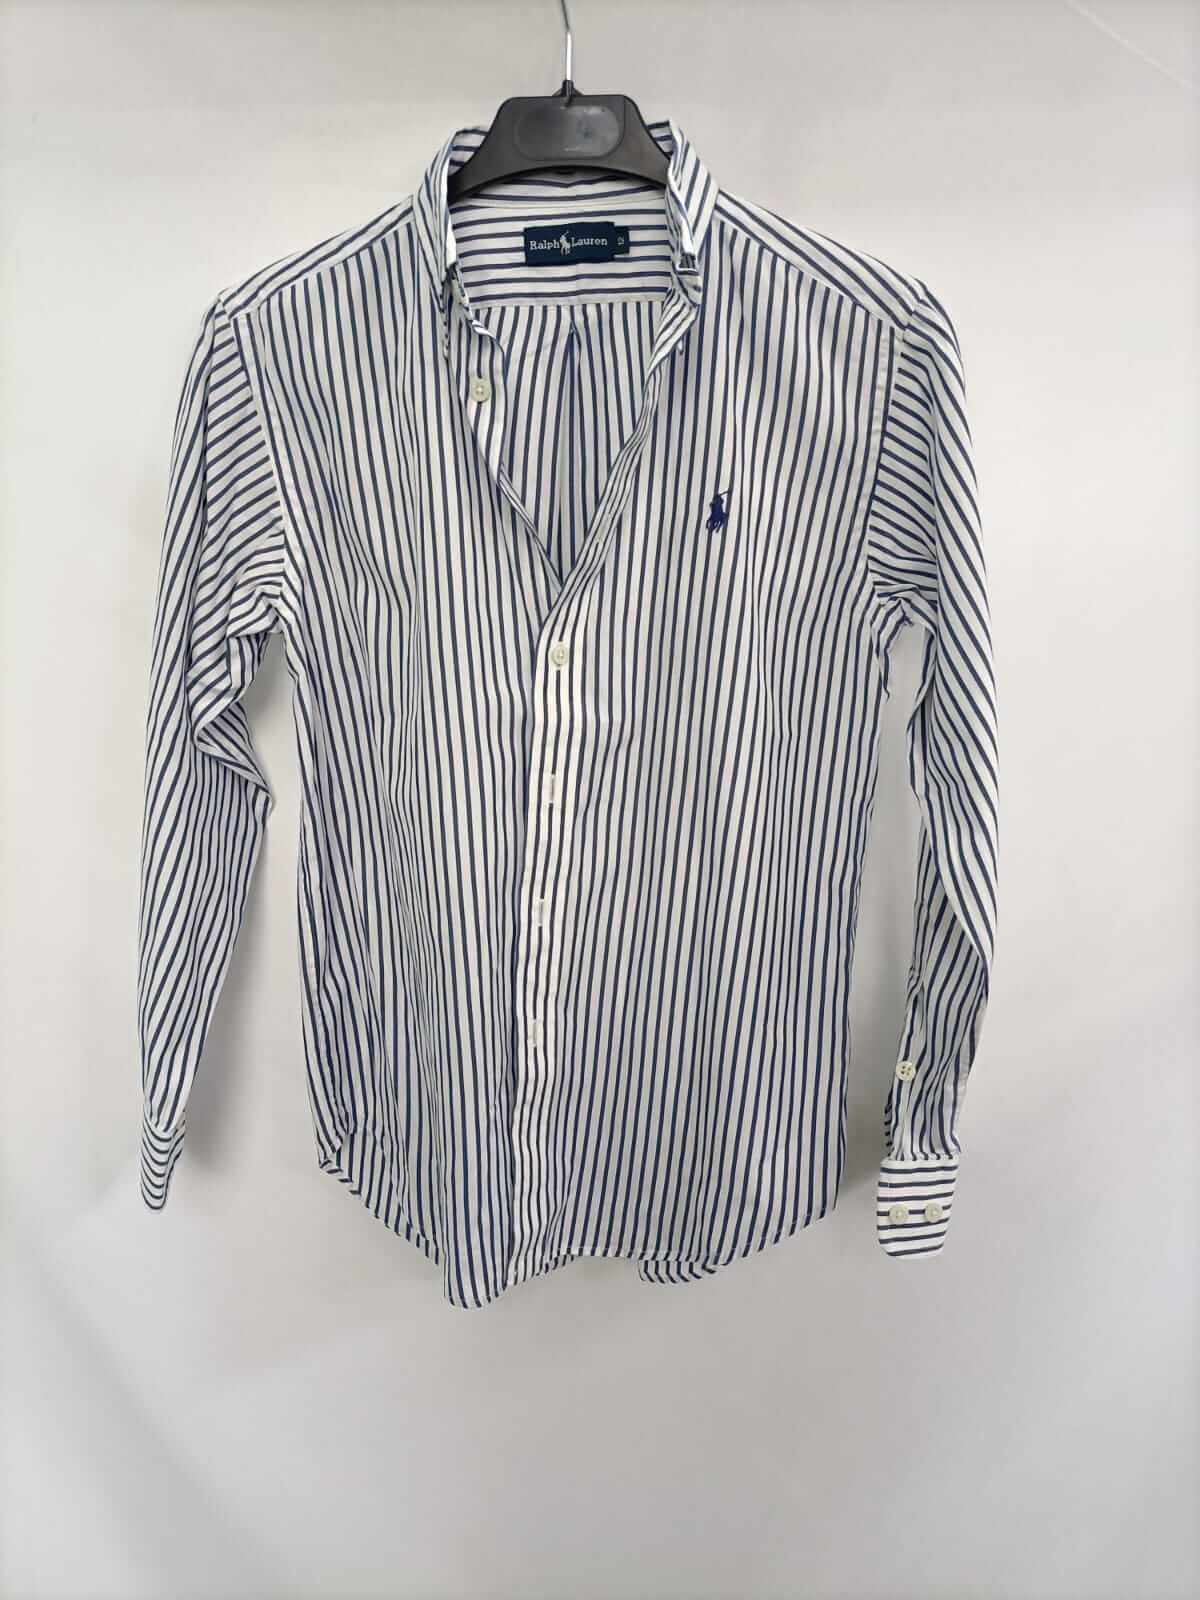 RALPH LAUREN. Camisa de rayas azul y blanca T.12 – Hibuy market